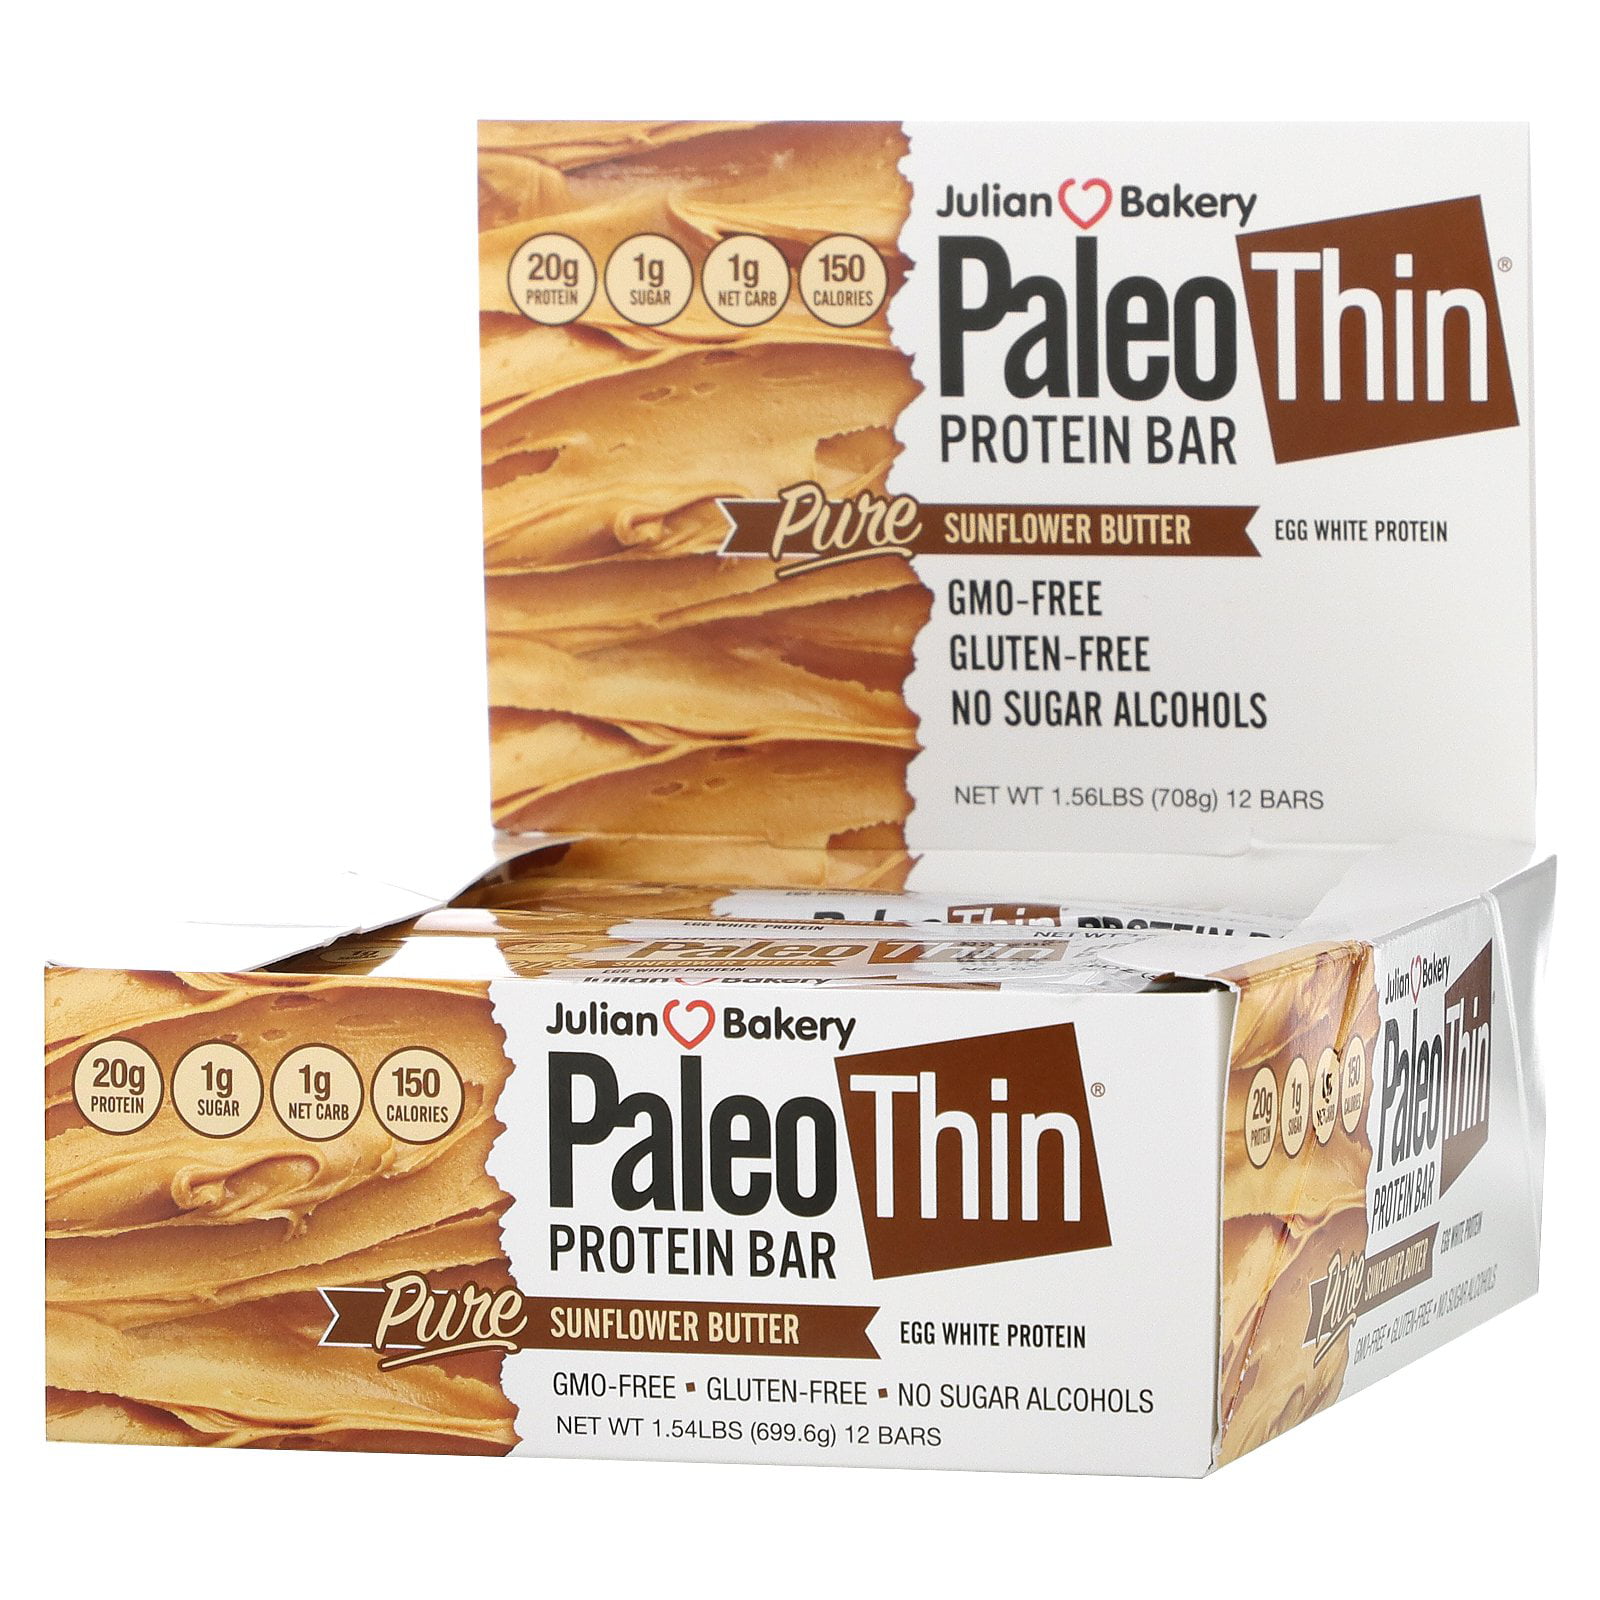 Paleo Thin Protein Bar, Pure Sunflower Butter, 12 Bars, 2.08 oz (59 g) Each, Julian Bakery - Walmart.com